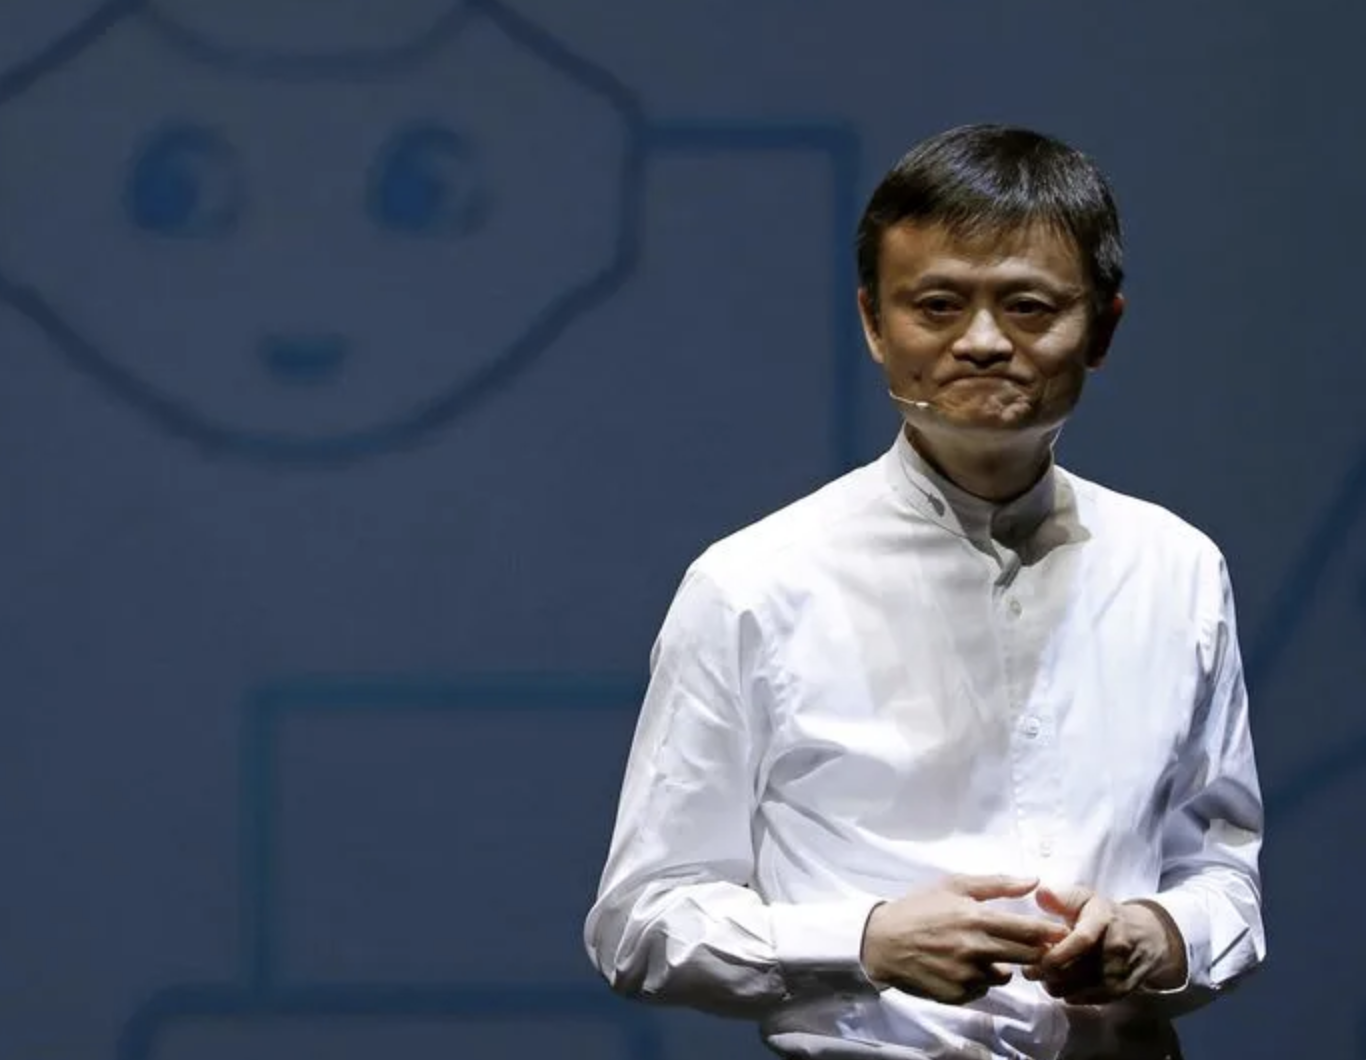 Jack Ma chính thức từ bỏ quyền kiểm soát Ant Group, 'kỷ nguyên Jack Ma' đã kết thúc? - Ảnh 1.